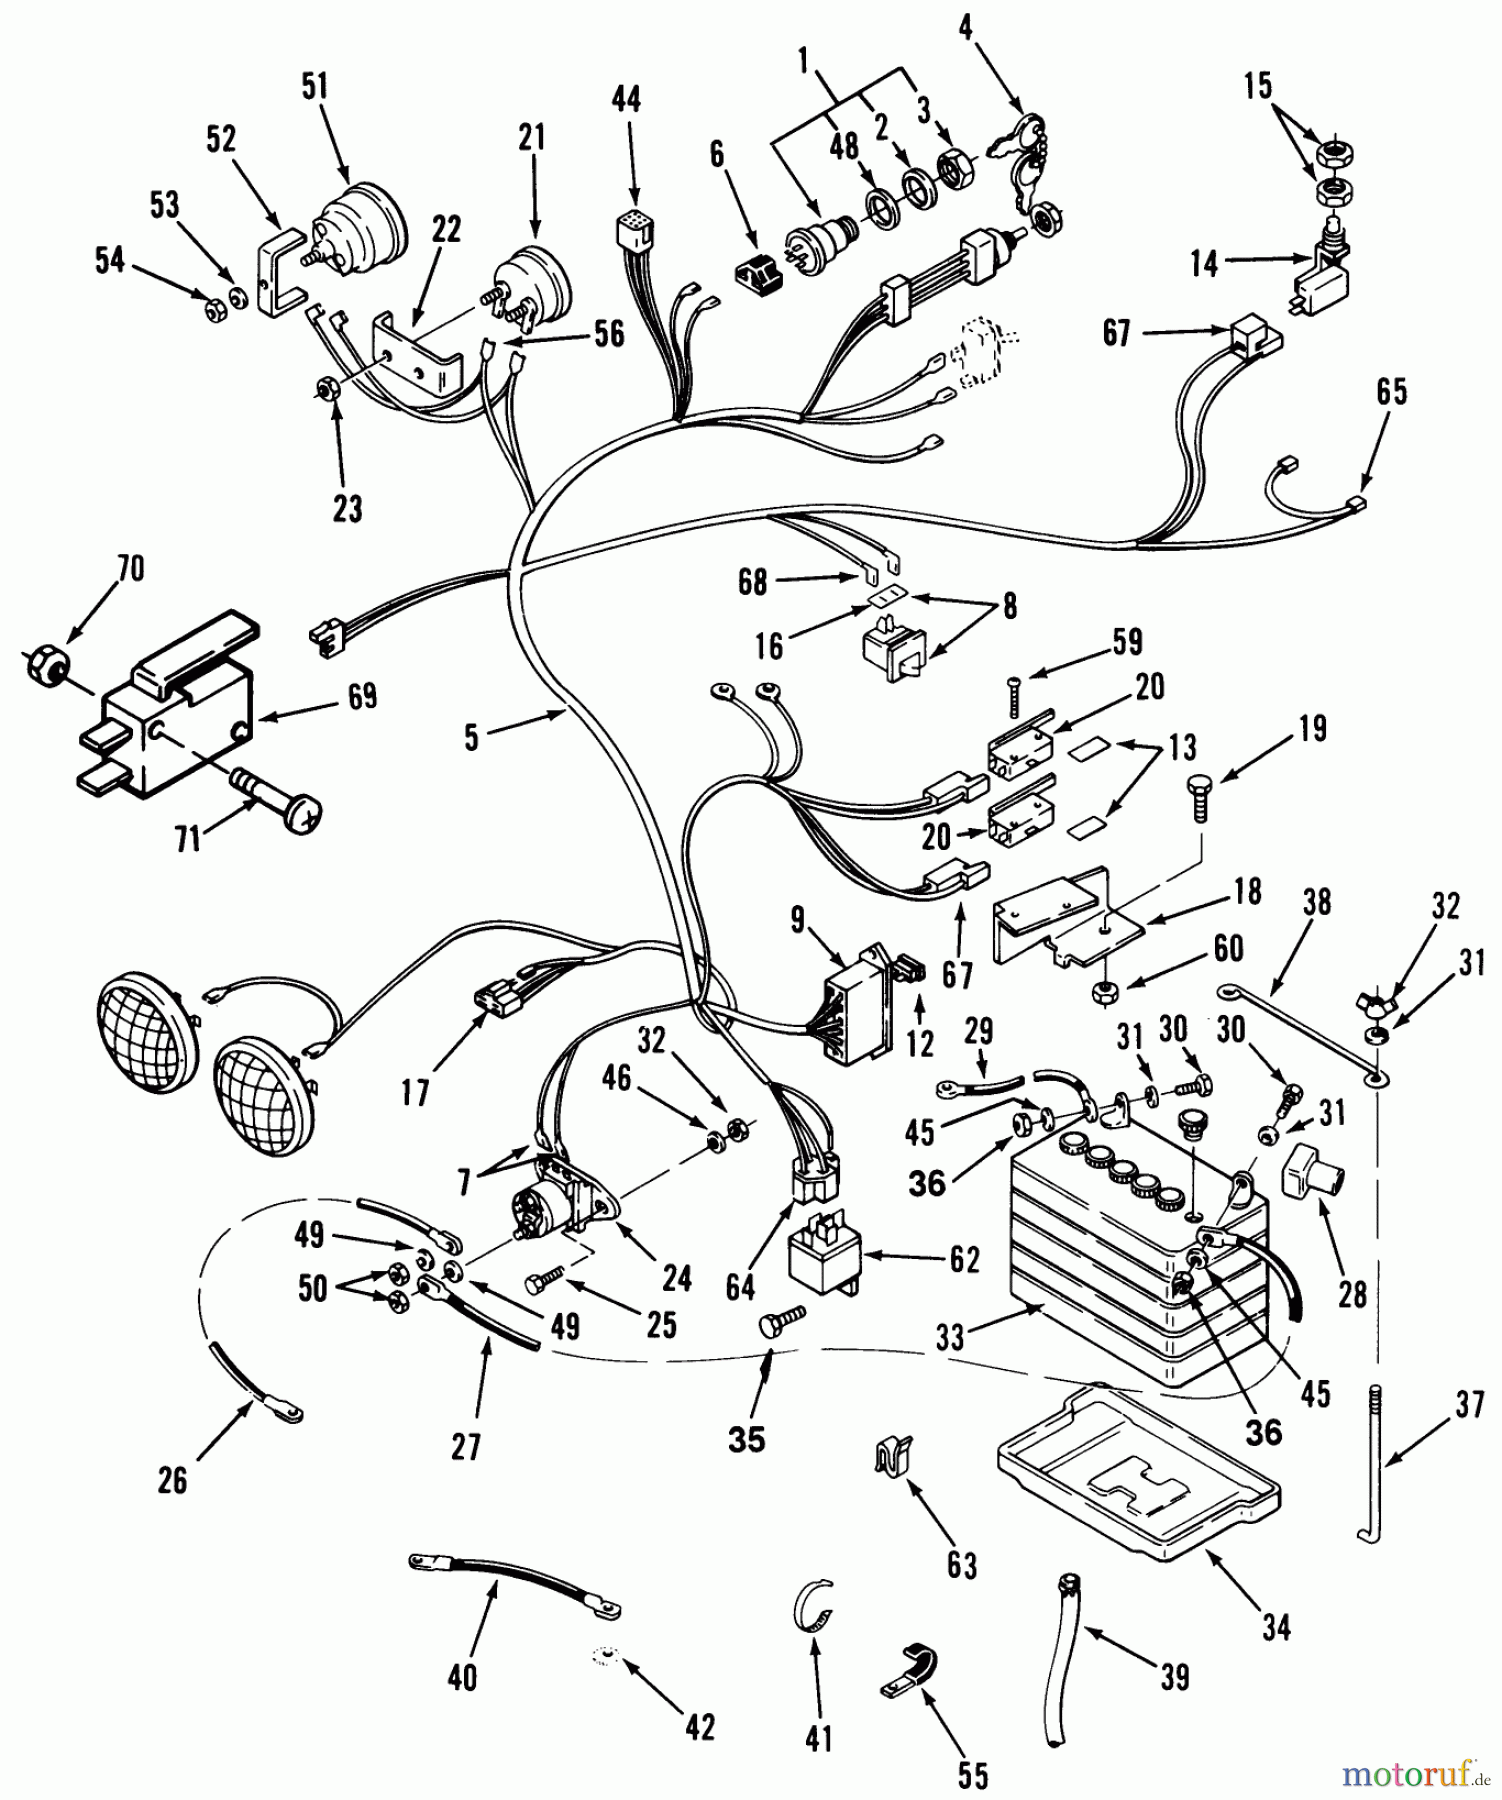  Toro Neu Mowers, Lawn & Garden Tractor Seite 1 31-16O803 (416-8) - Toro 416-8 Garden Tractor, 1991 (1000001-1999999) ELECTRICAL SYSTEM #1